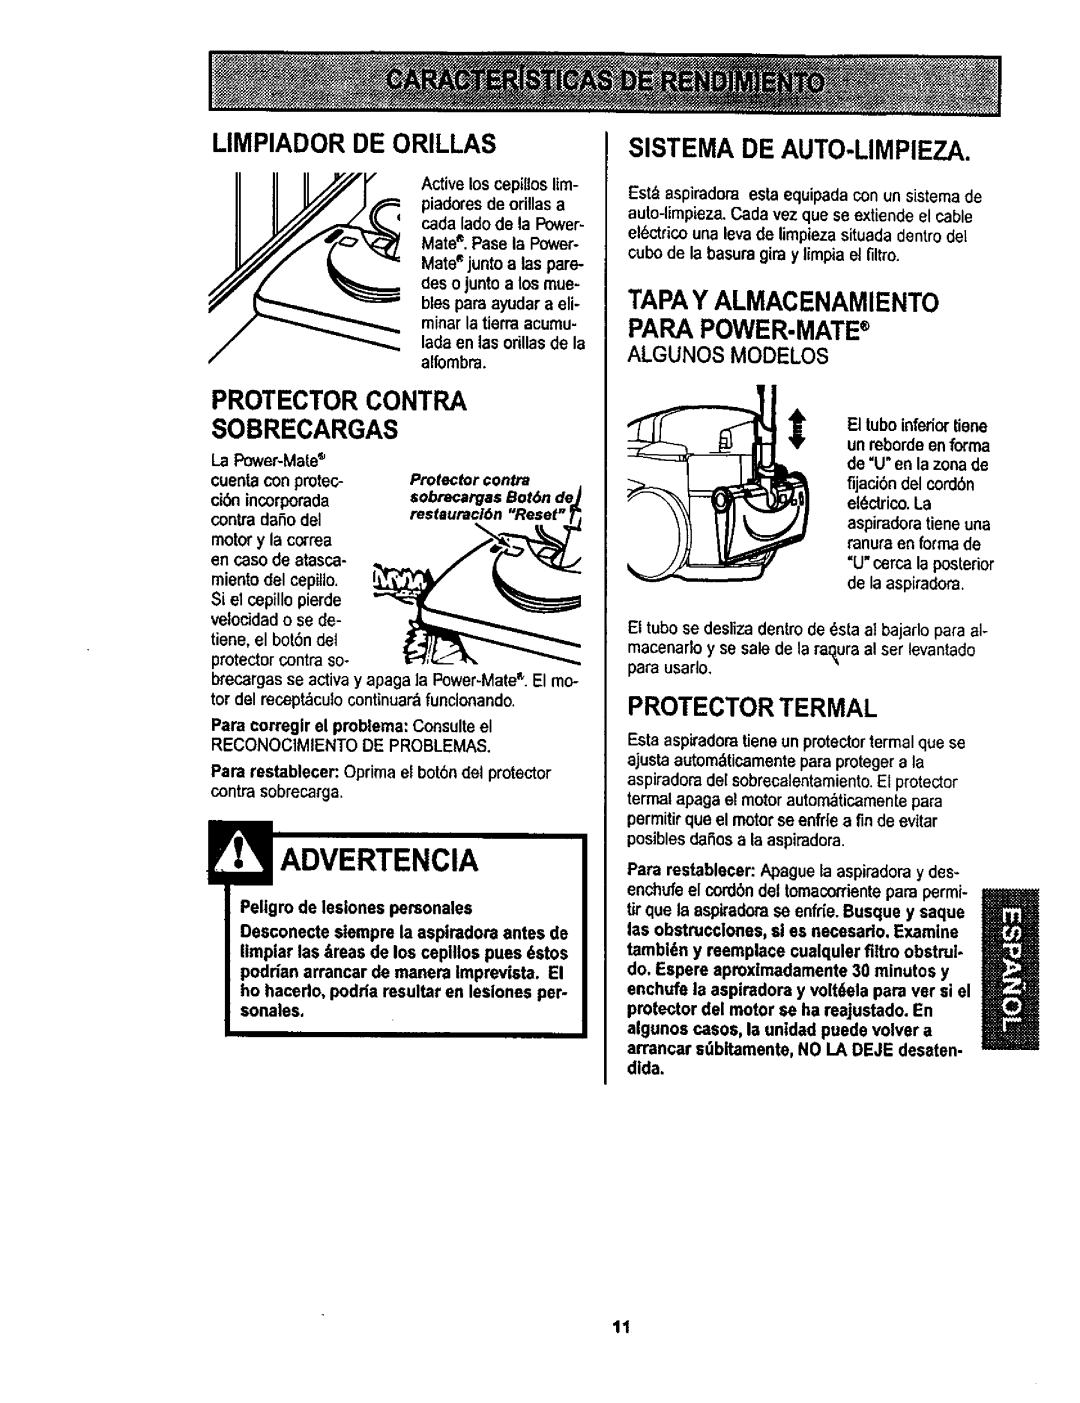 Kenmore 116.22822 Limpiador De Orillas, Protector Contra Sobrecargas, Sistema De Auto-Limpieza, Protector Termal 